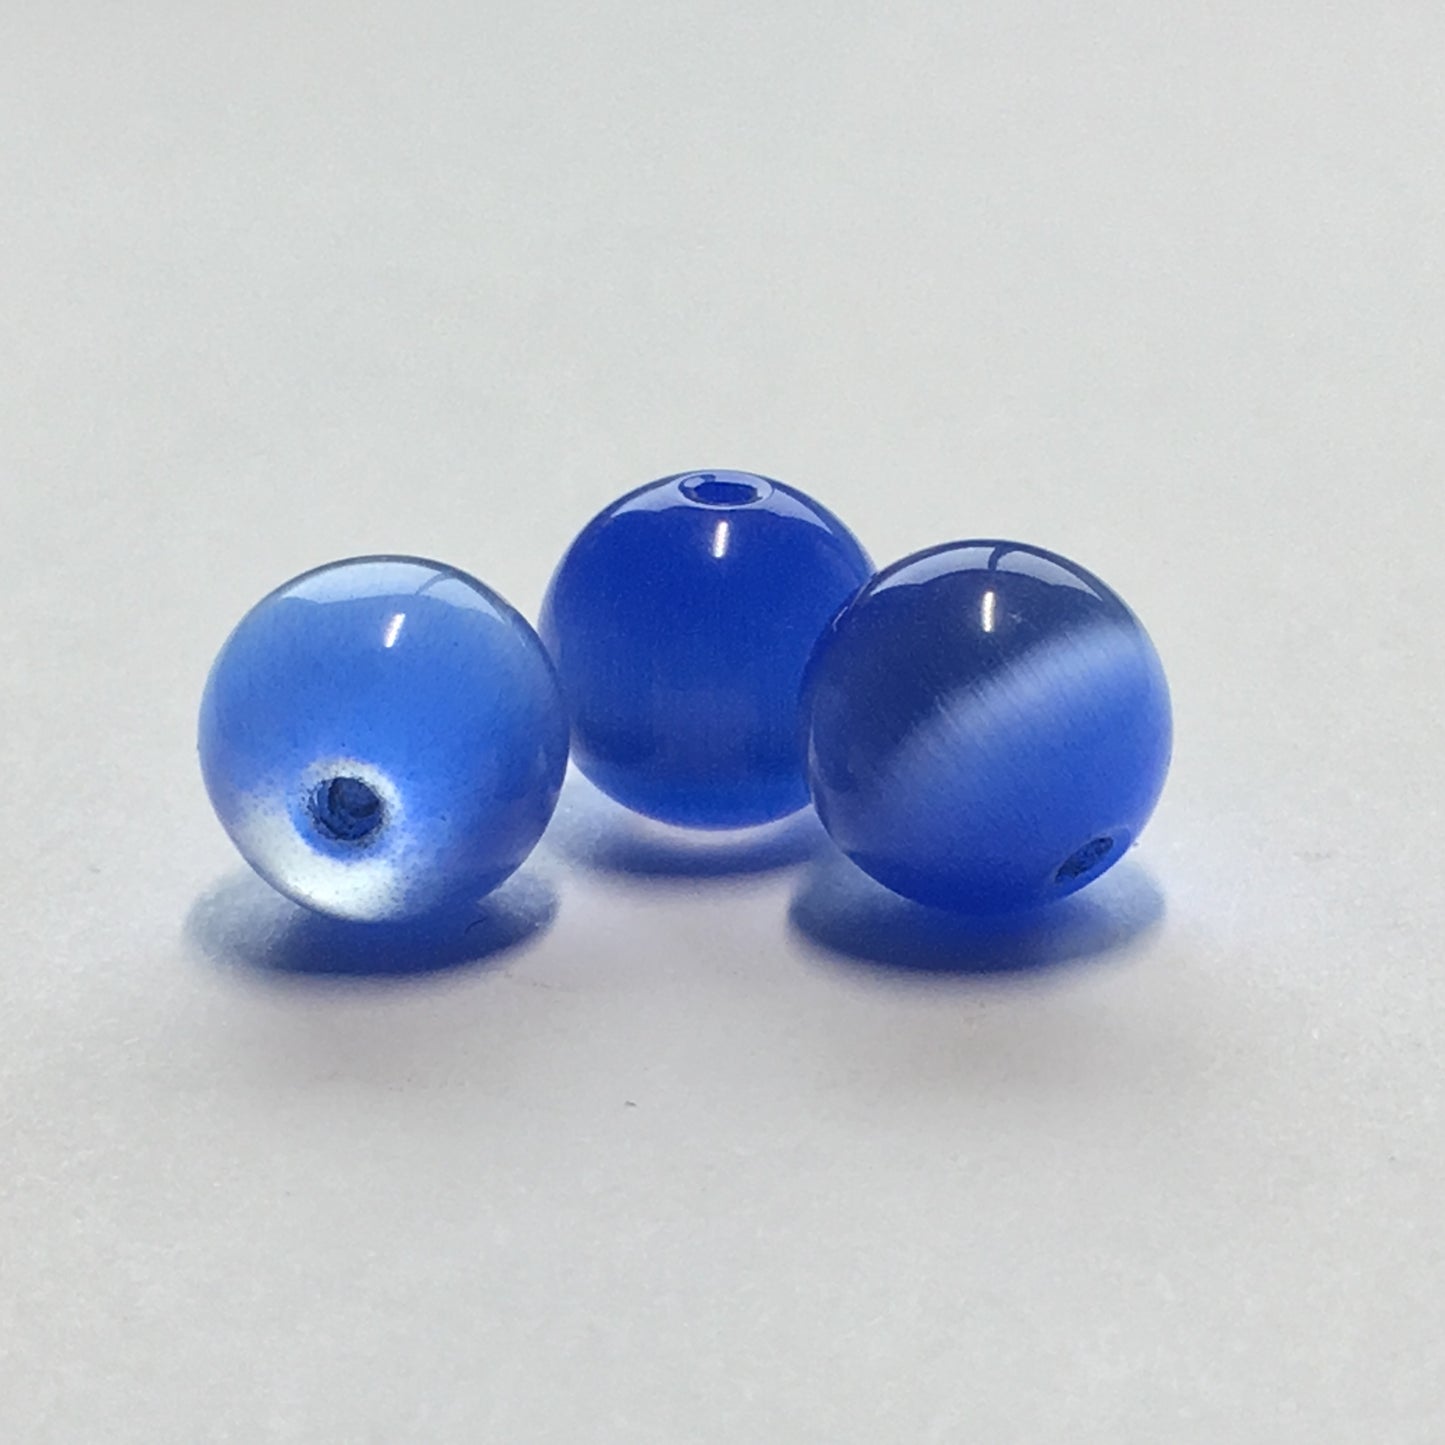 Blue Cat's Eye Round Beads 9 mm - 3 Beads